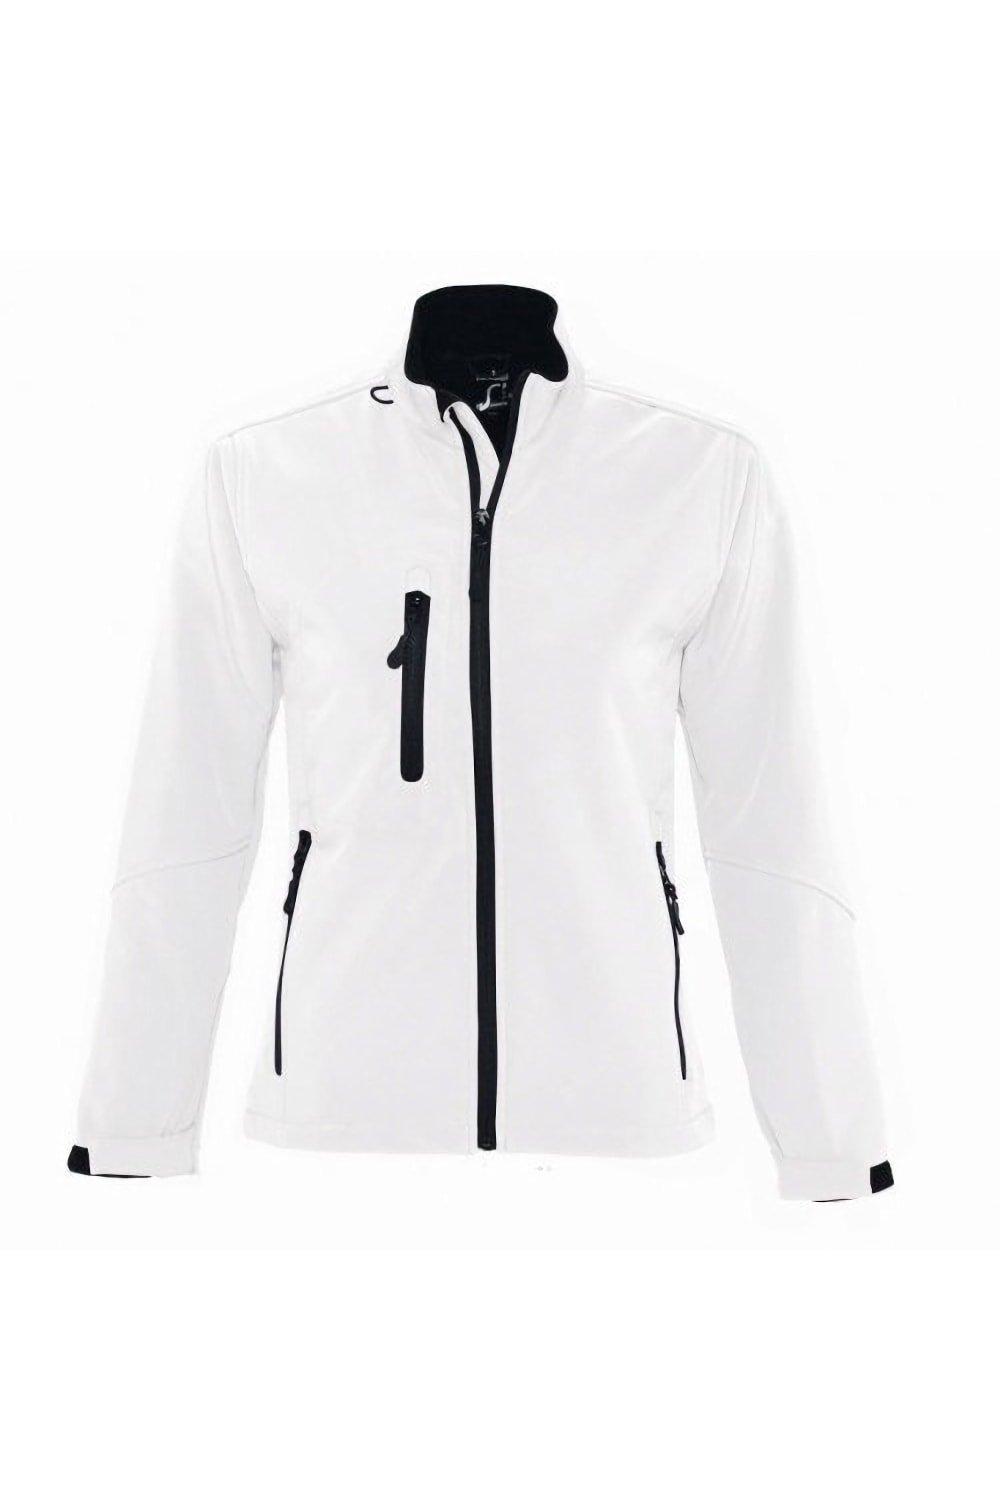 Куртка Roxy Soft Shell (дышащая, ветрозащитная и водостойкая) SOL'S, белый